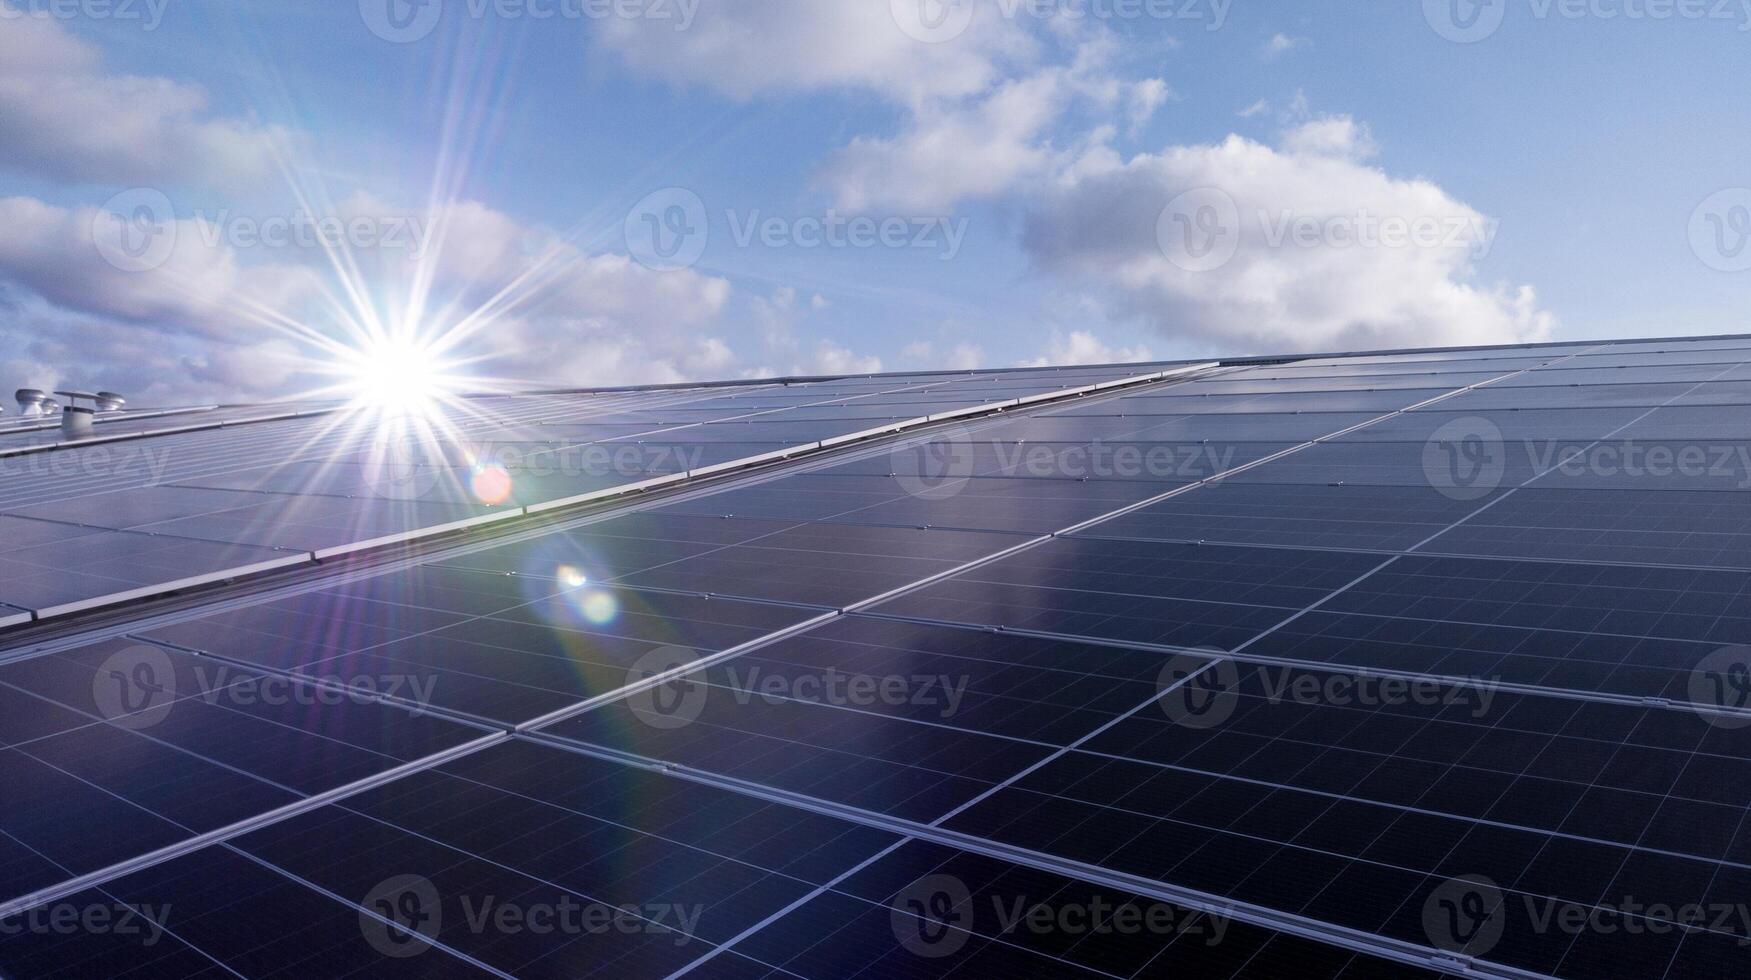 fotovoltaica solar paneles montado en edificio techo para productor limpiar ecológico electricidad a atardecer.fotovoltaico paneles en el vista.tejado de solar paneles en el edificio, renovable energía concepto foto